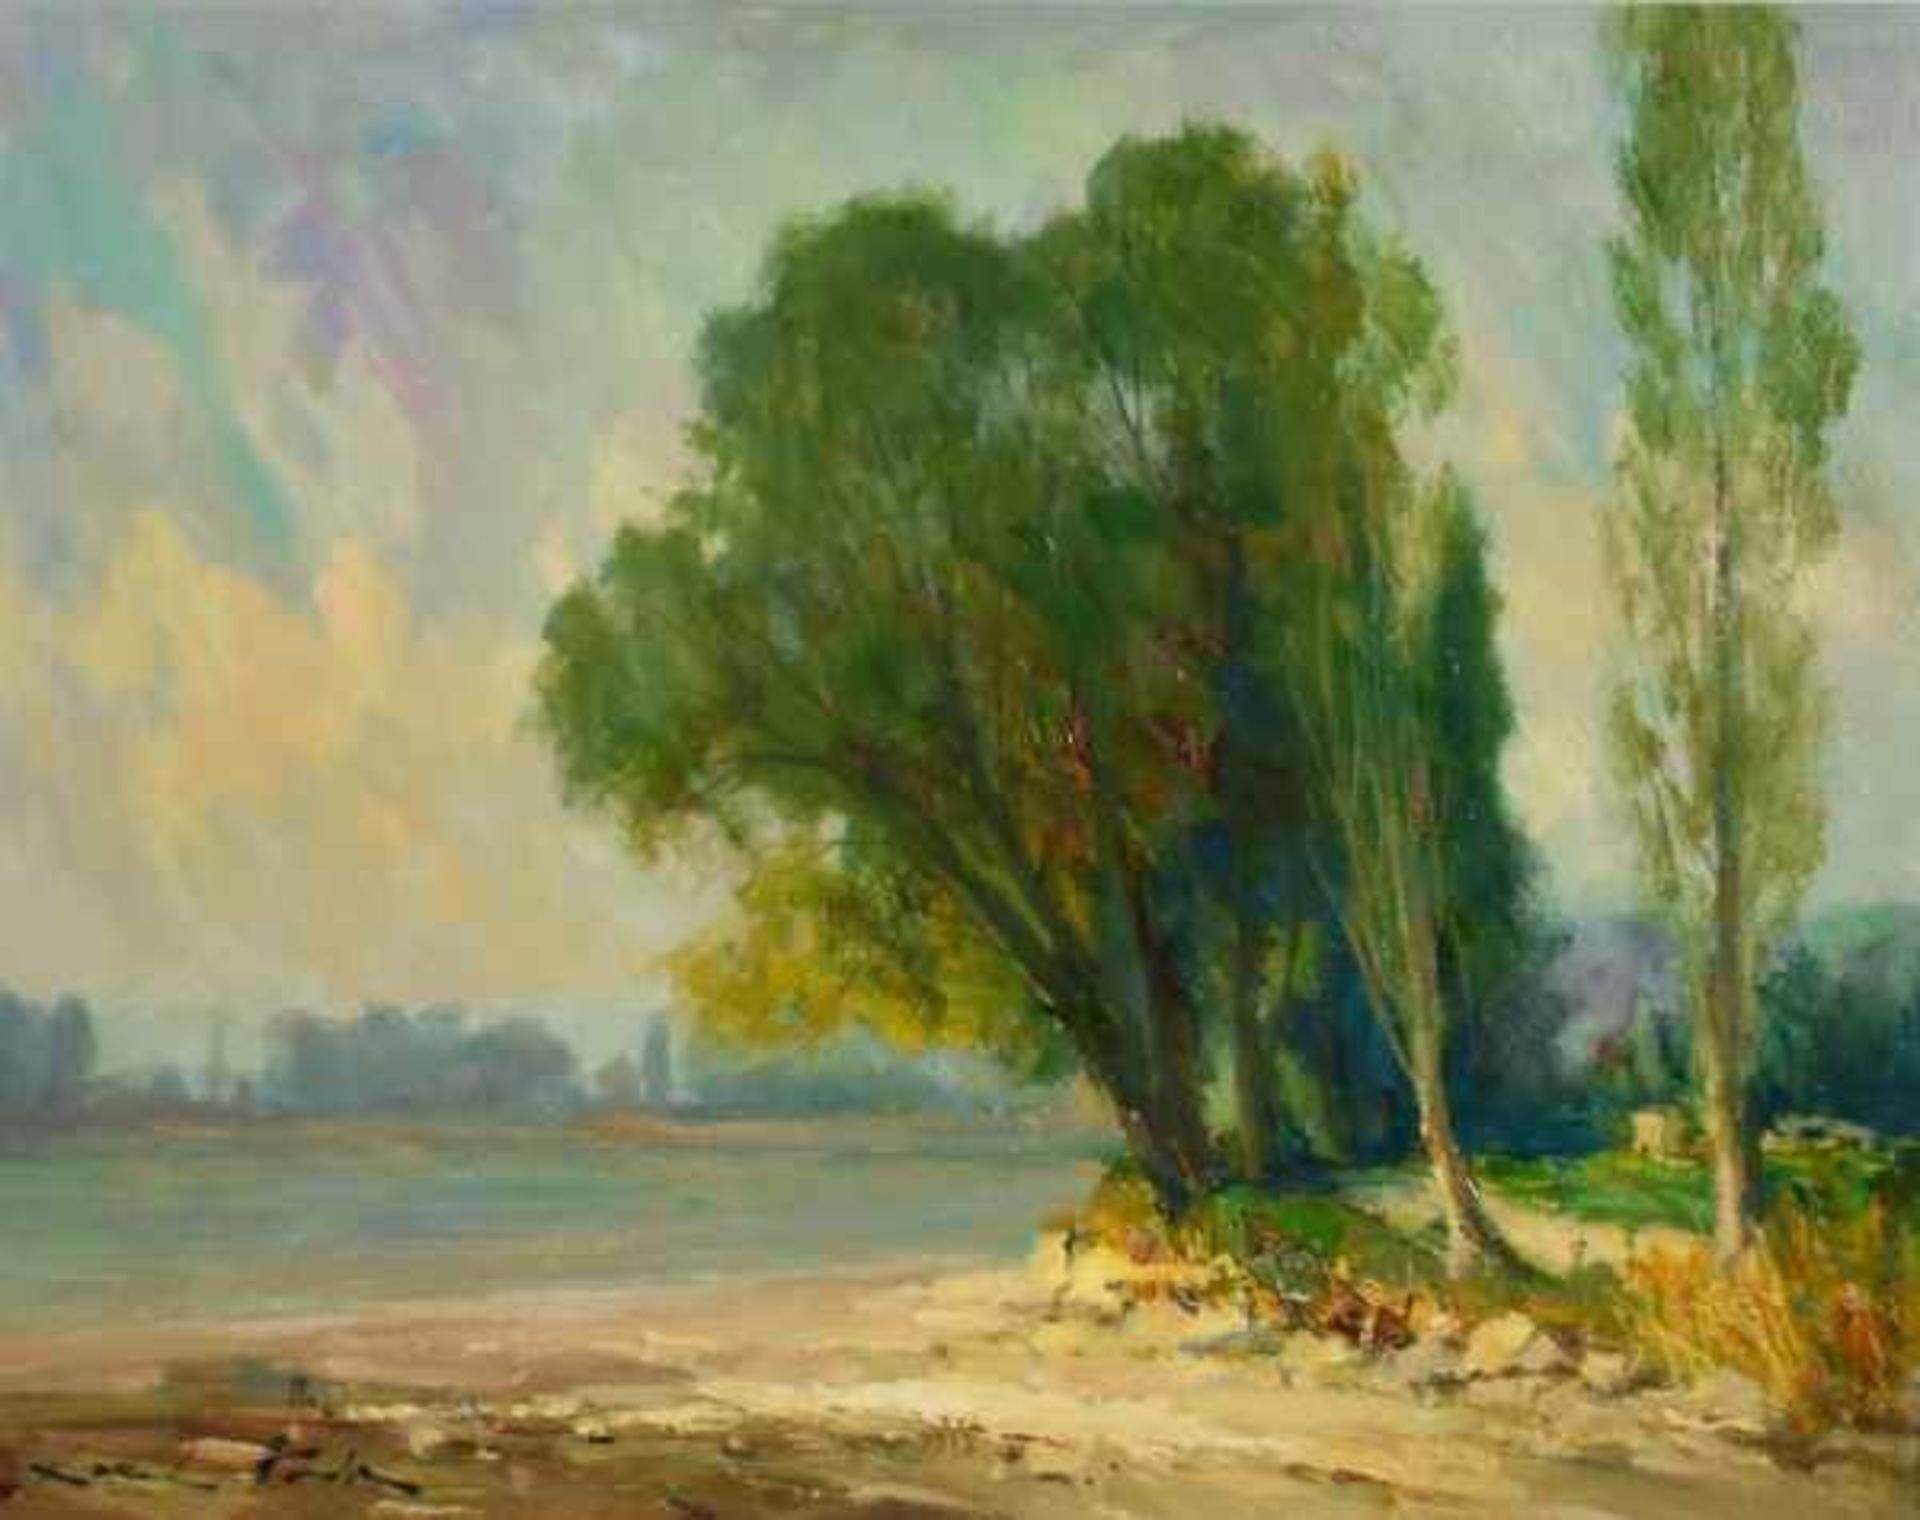 HODR Karel (1910 Prag - 2002 Konstanz) "Uferlandschaft", sommerlicher Strand am See mit Blick auf